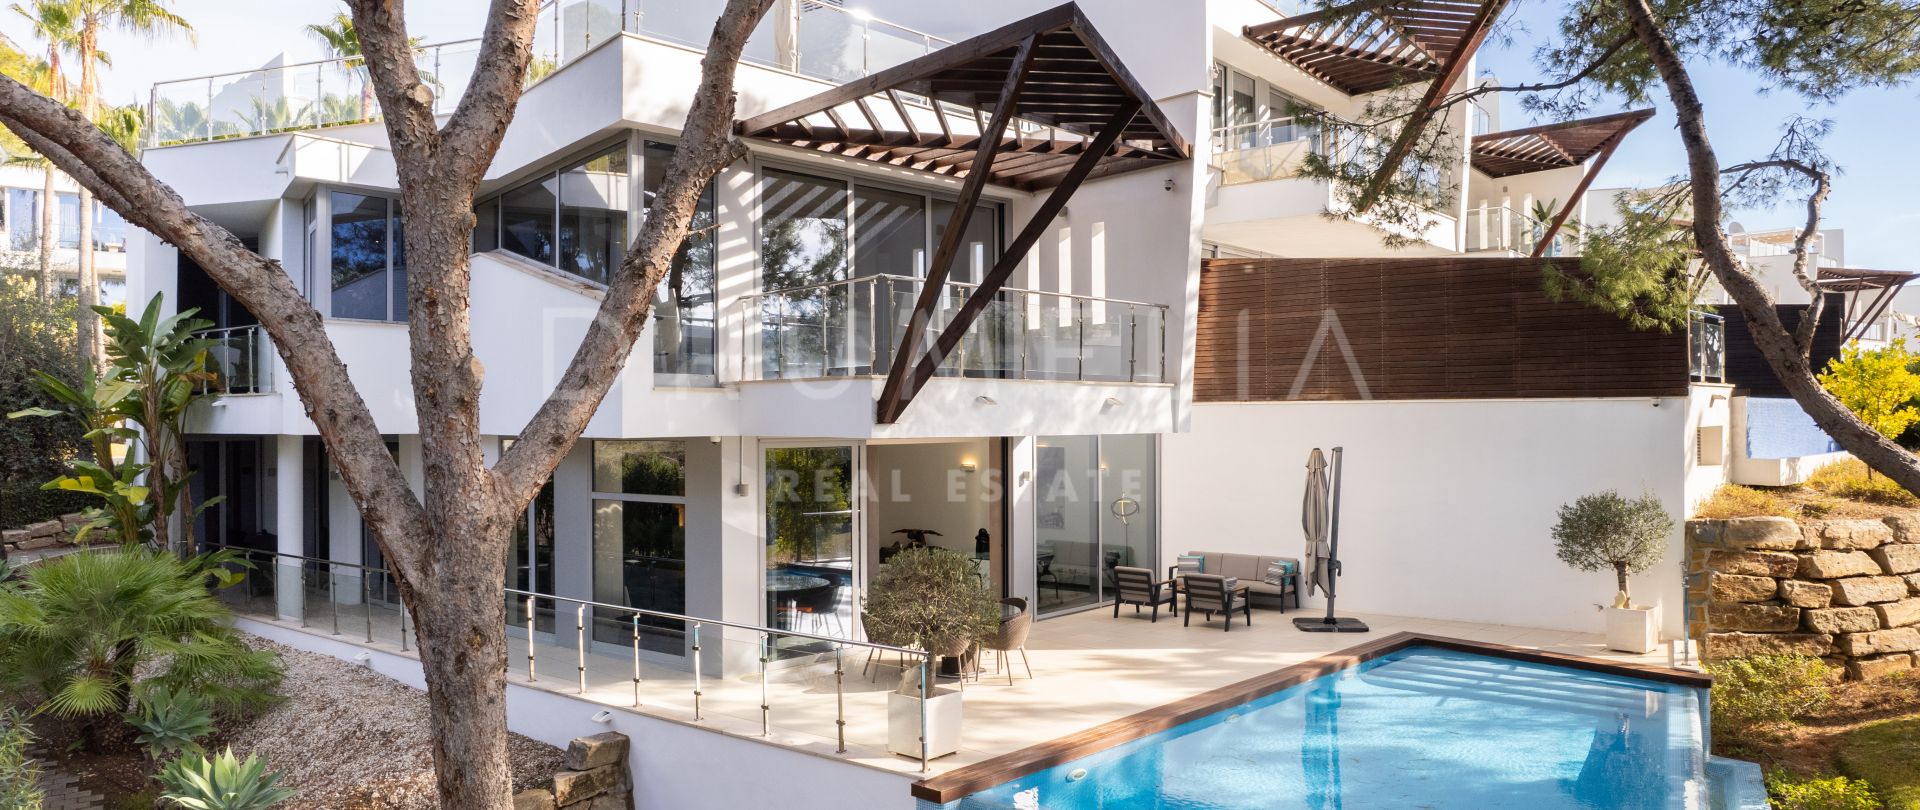 Lujosa casa adosada moderna en la zona de alta gama de Meisho Hills, Sierra Blanca, Milla de Oro de Marbella